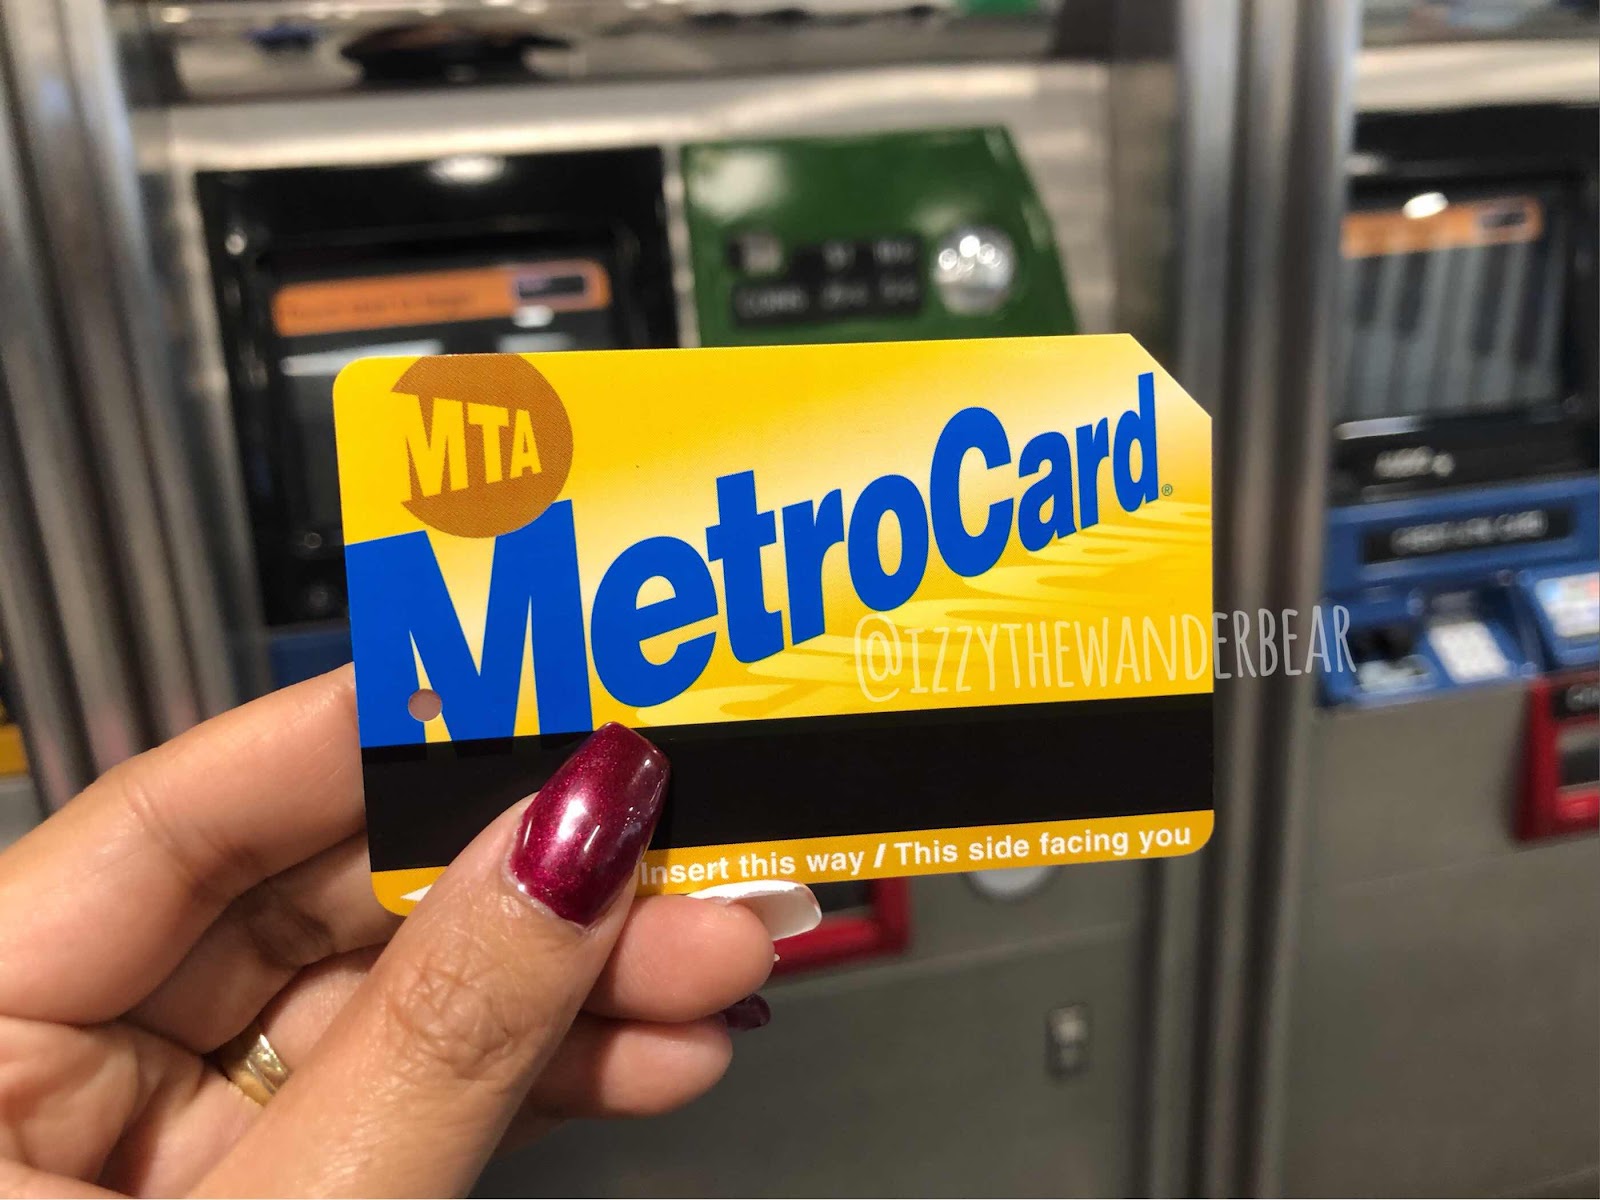 Izzy the Wander Bear - Subway Ticket : Metro Card